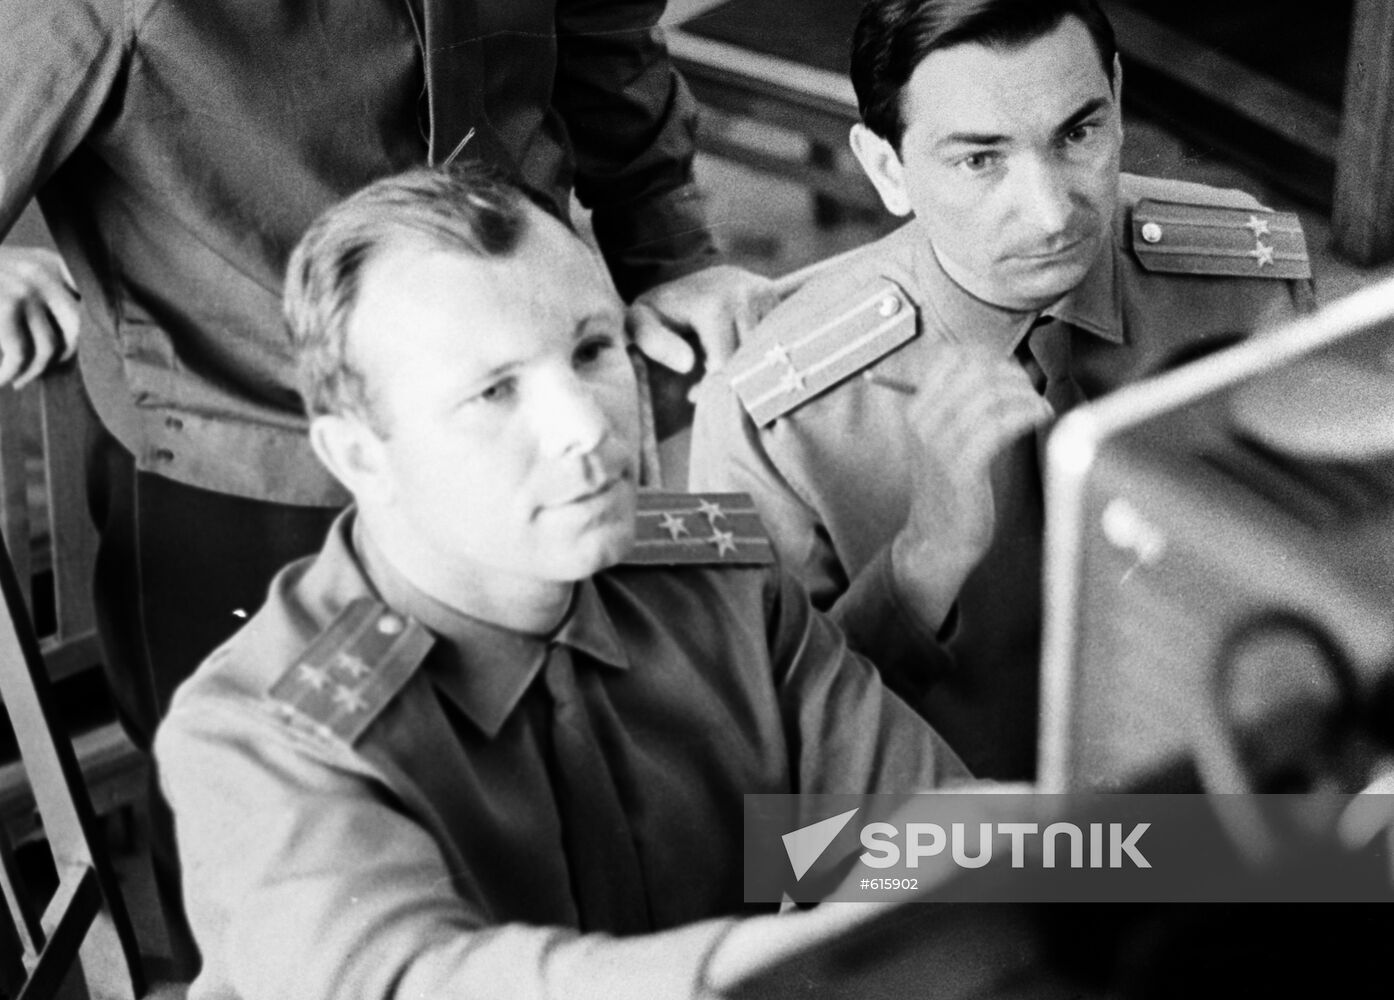 The USSR pilot-cosmonauts Yuri Gagarin and Valery Bykovsky